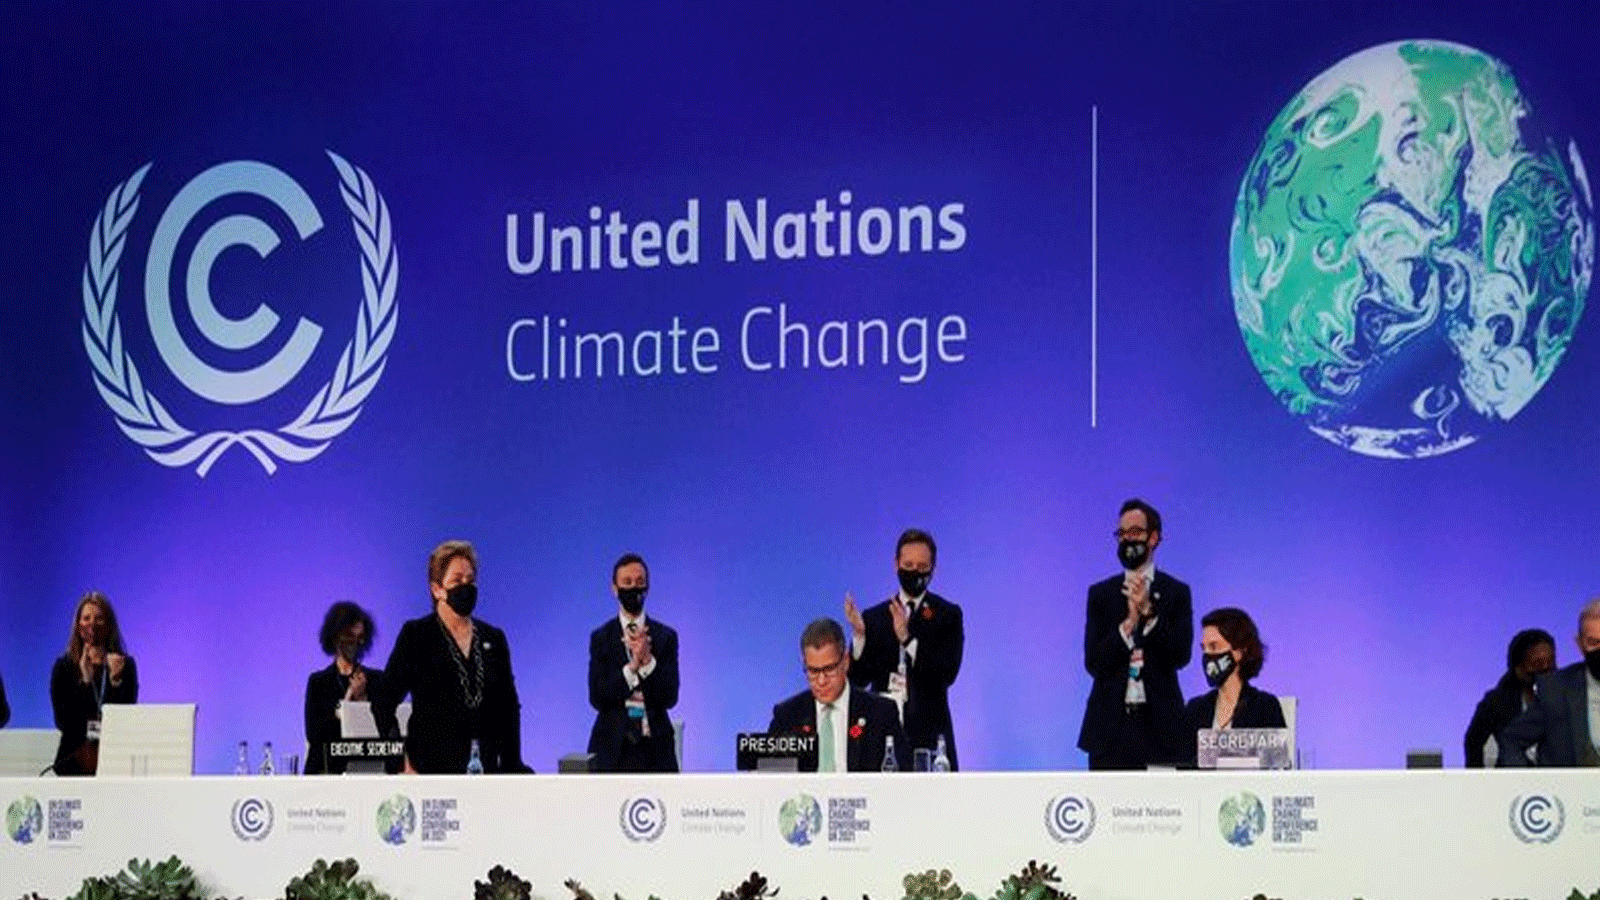 لقطة من اجتماع للأمم المتحدة حول المناخ